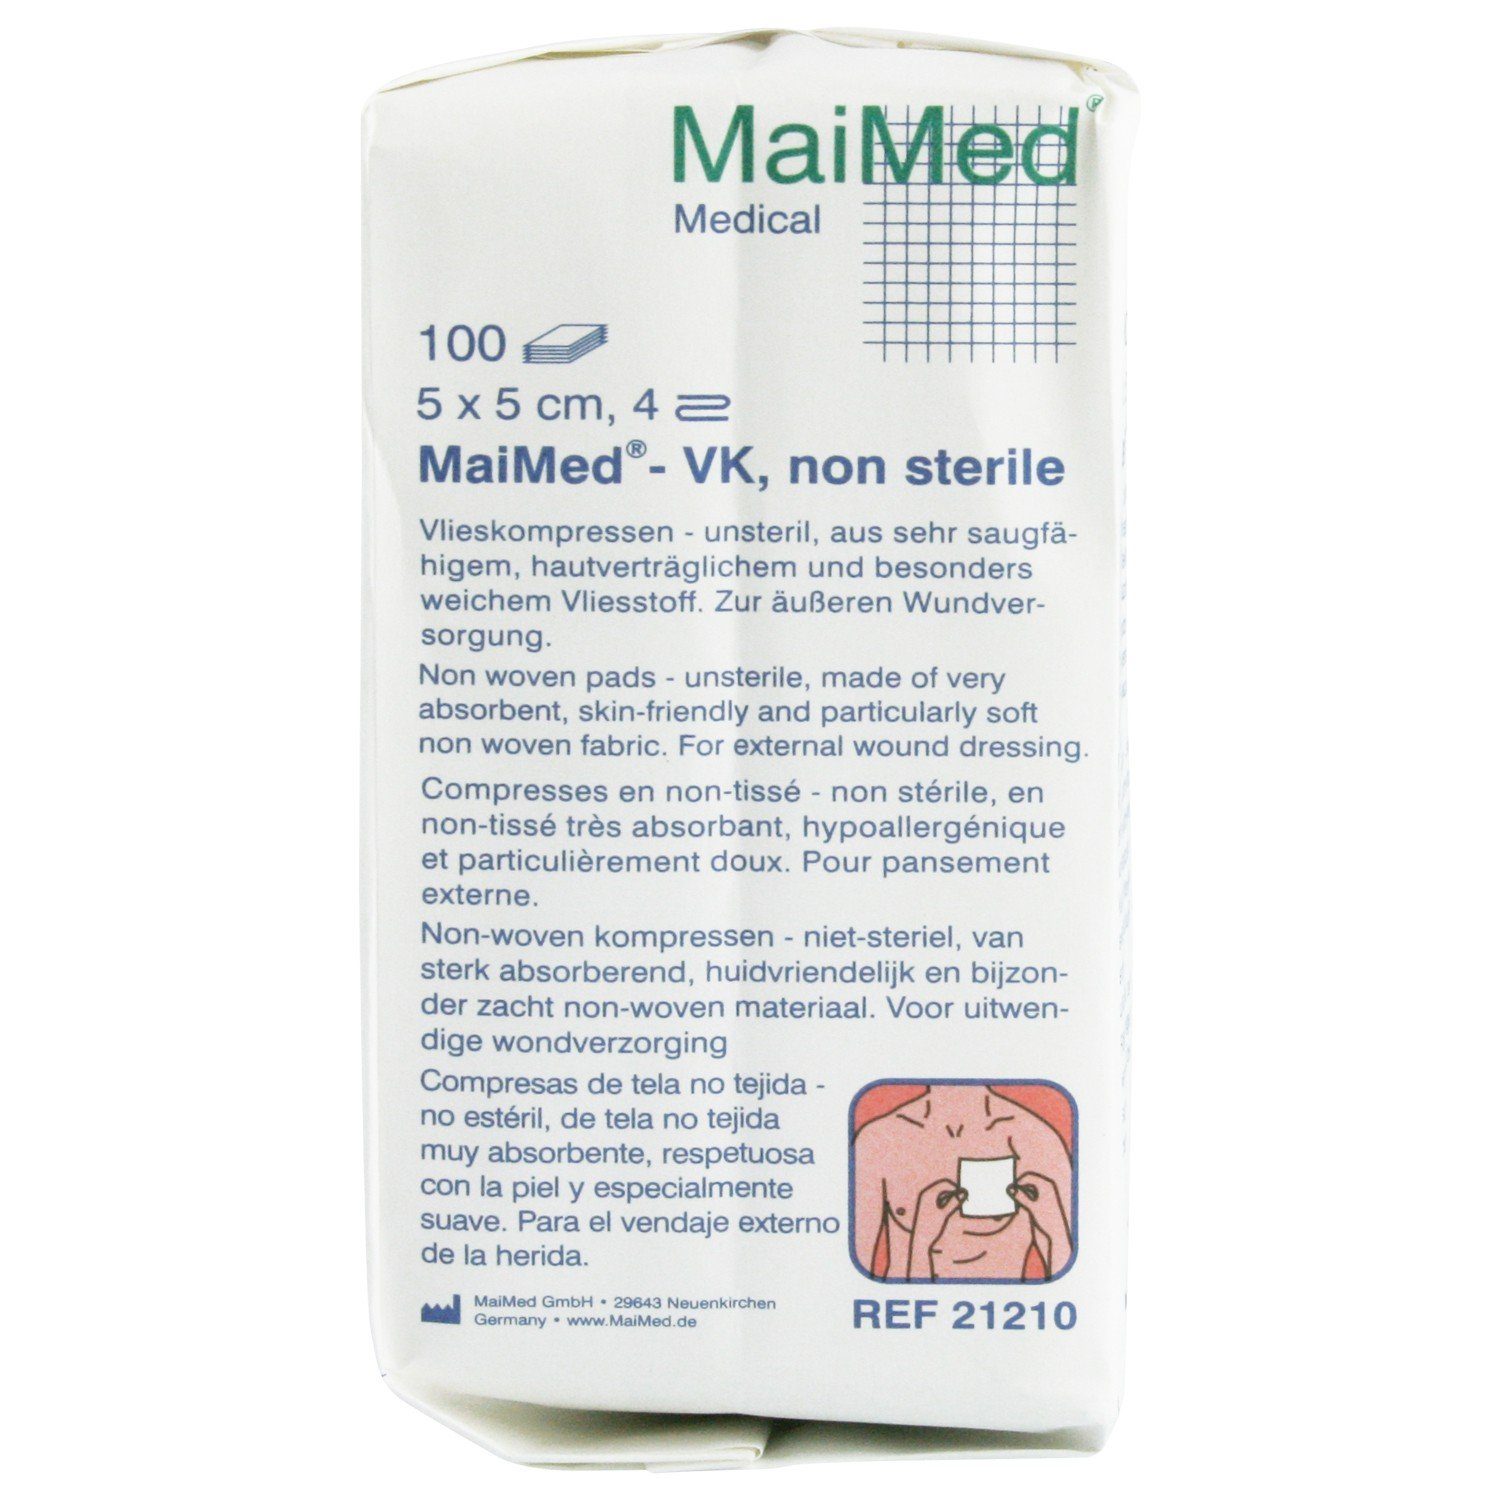 MaiMed Kalt-Warm-Kompresse MaiMed - VK Vlieskompressen unsteril 4-fach 30 g